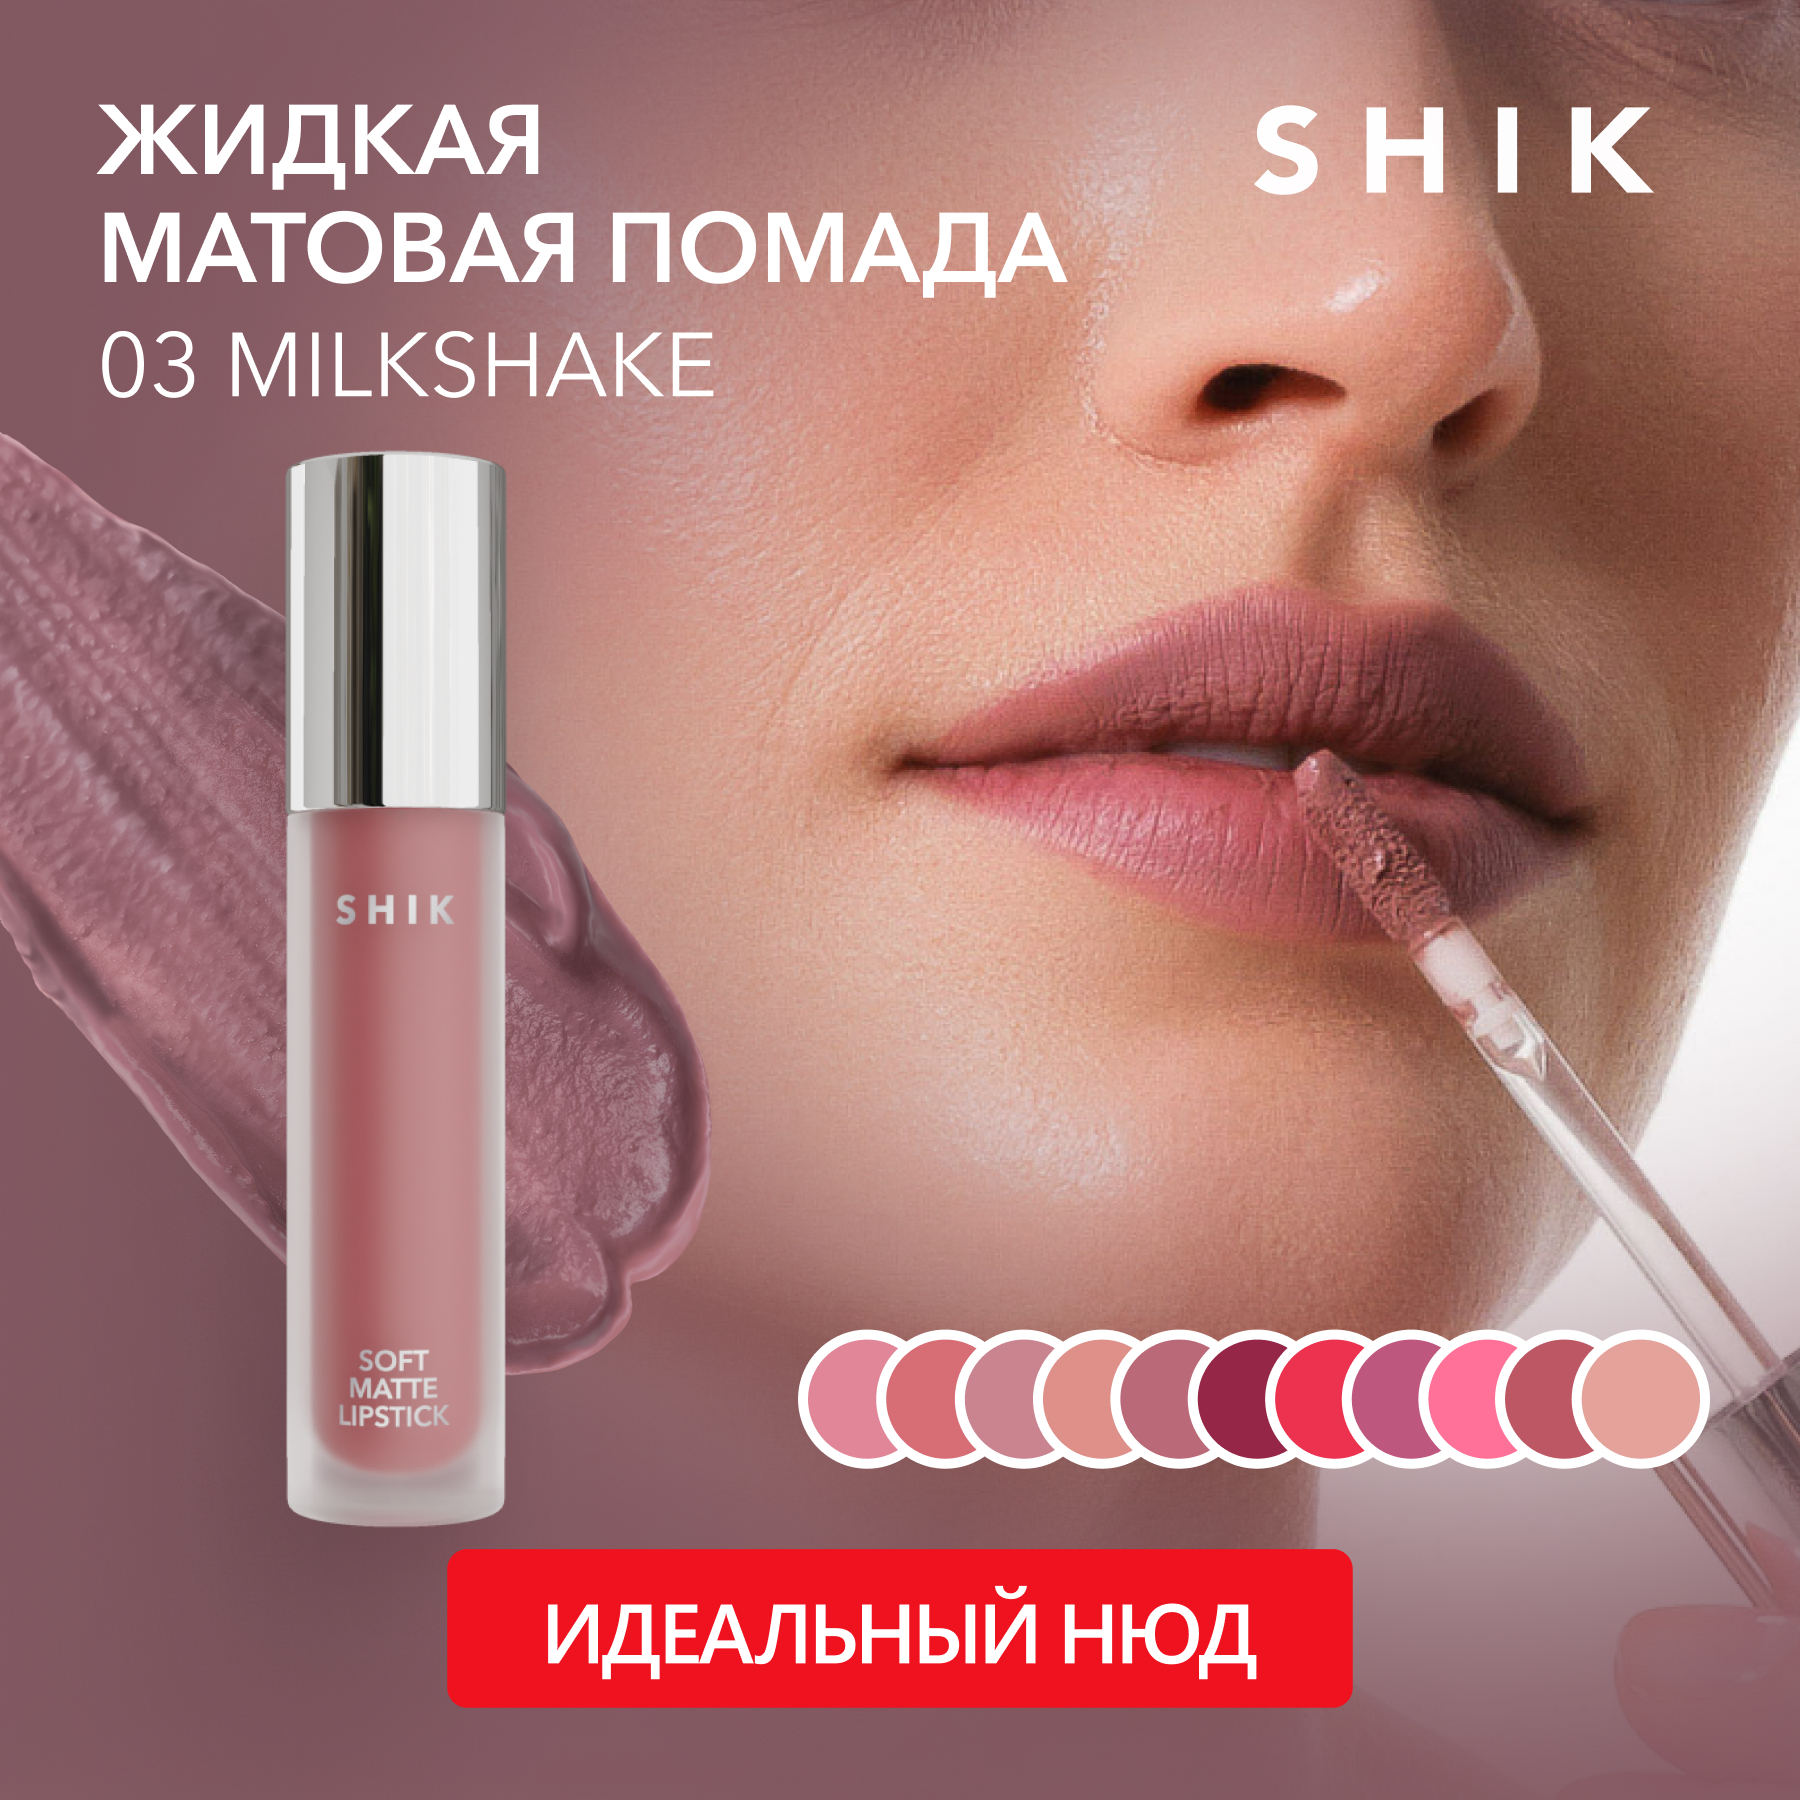 Помада для губ SHIK Soft Matte Lipstick жидкая, матовая тон 03 Milkshake 5 г помада для губ mac lipstick matte матовая тон russian red 3 г